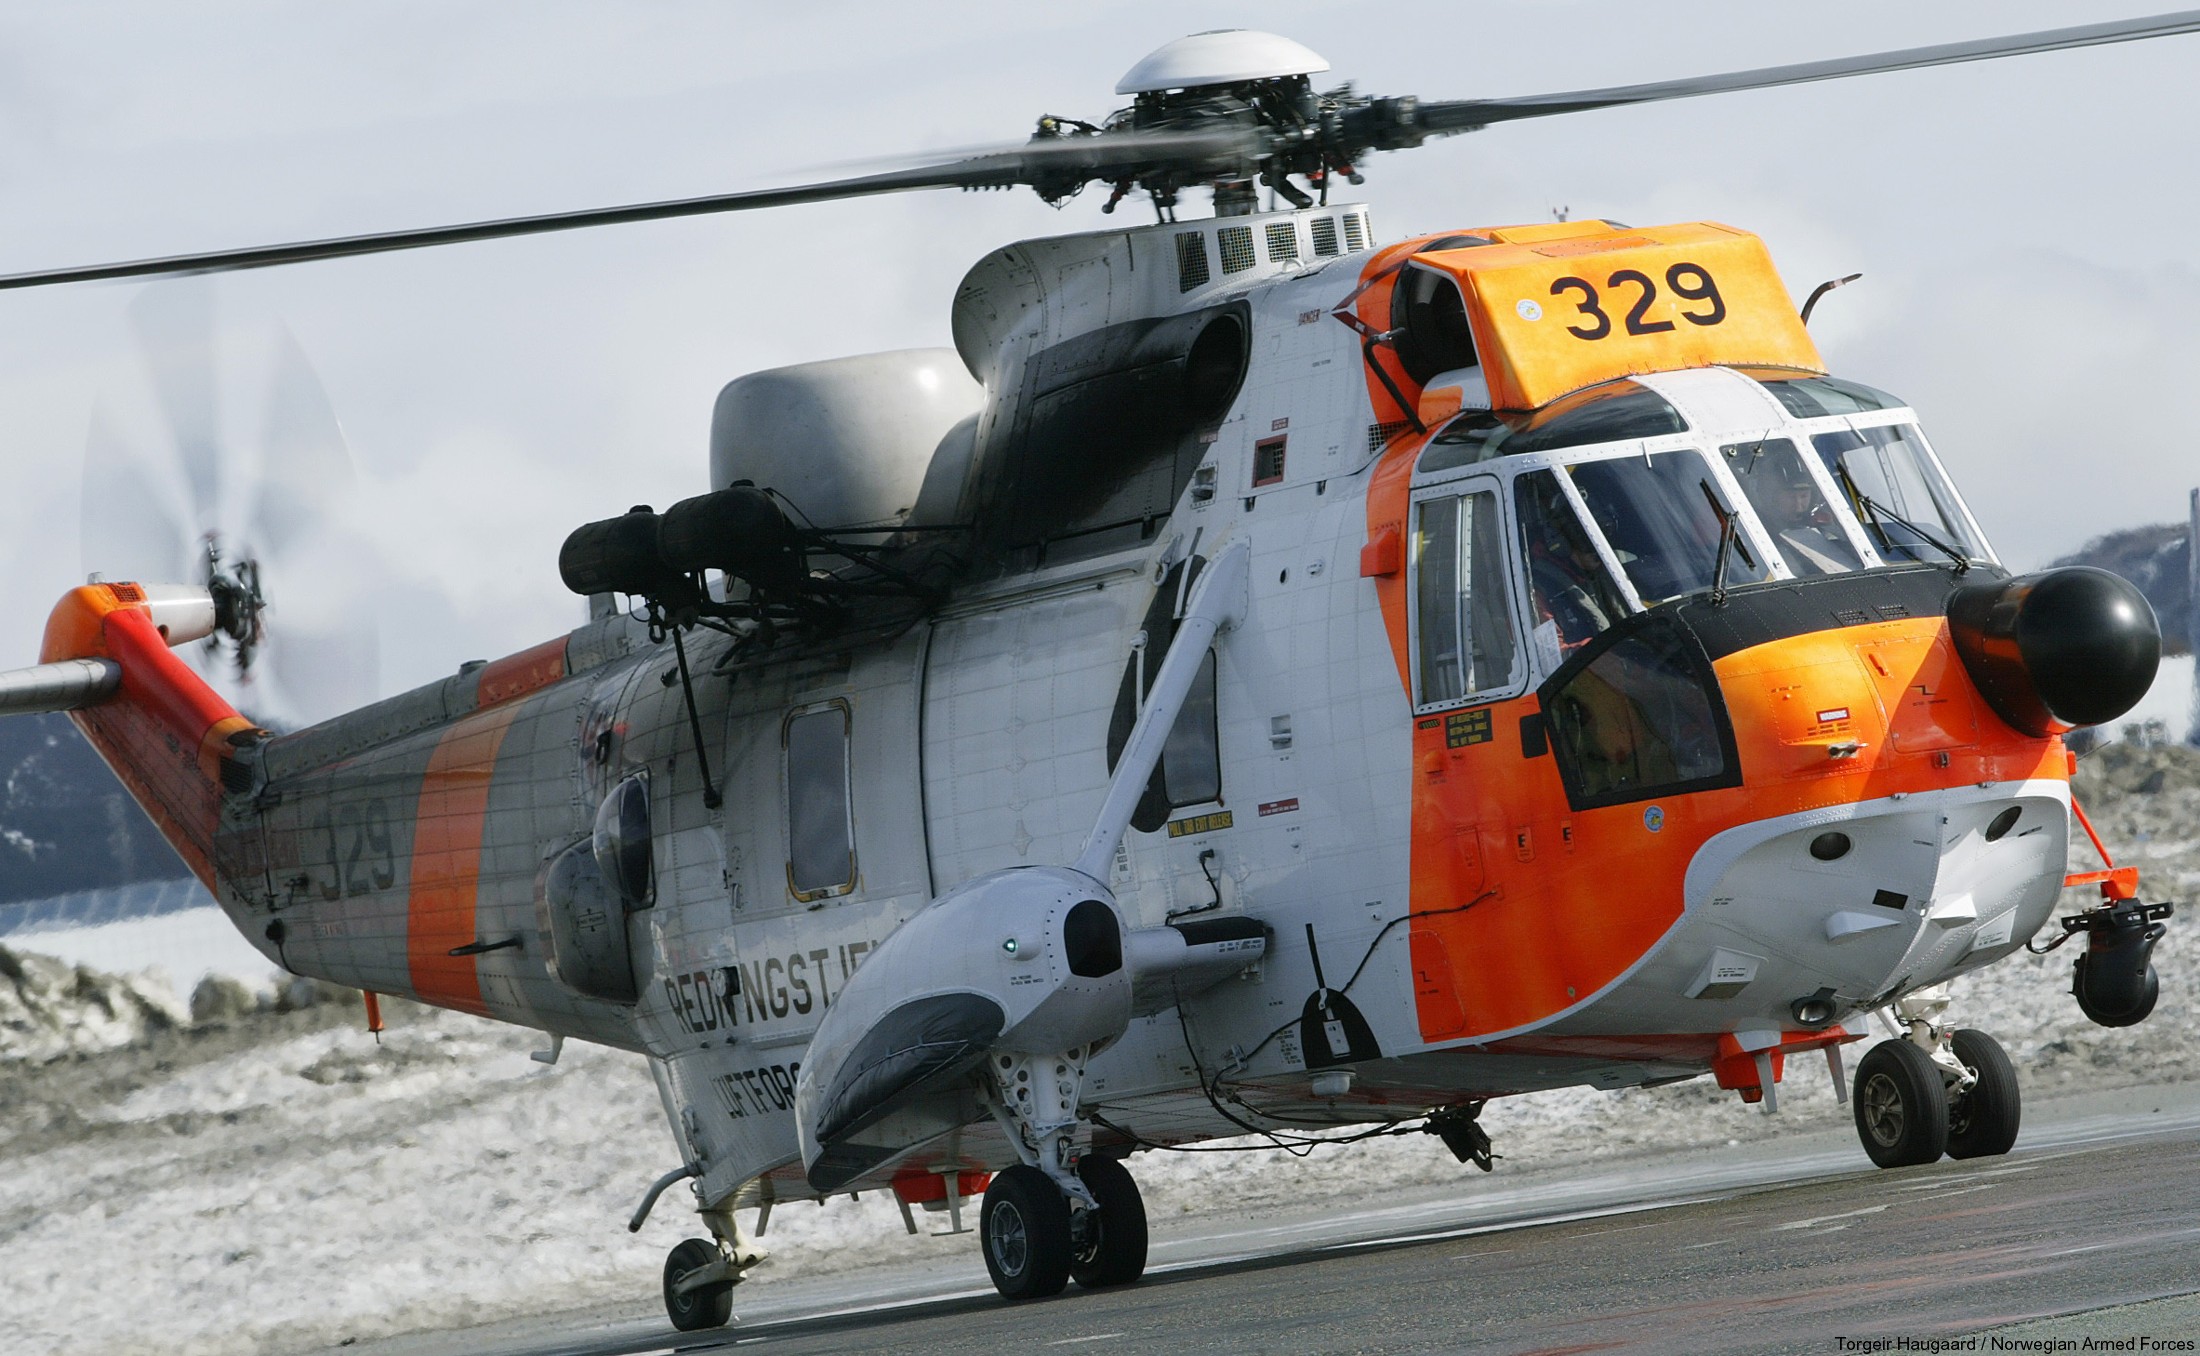 westland ws-61 sea king royal norwegian air force sar rescue 330 squadron skvadron luftforsvaret 329 07